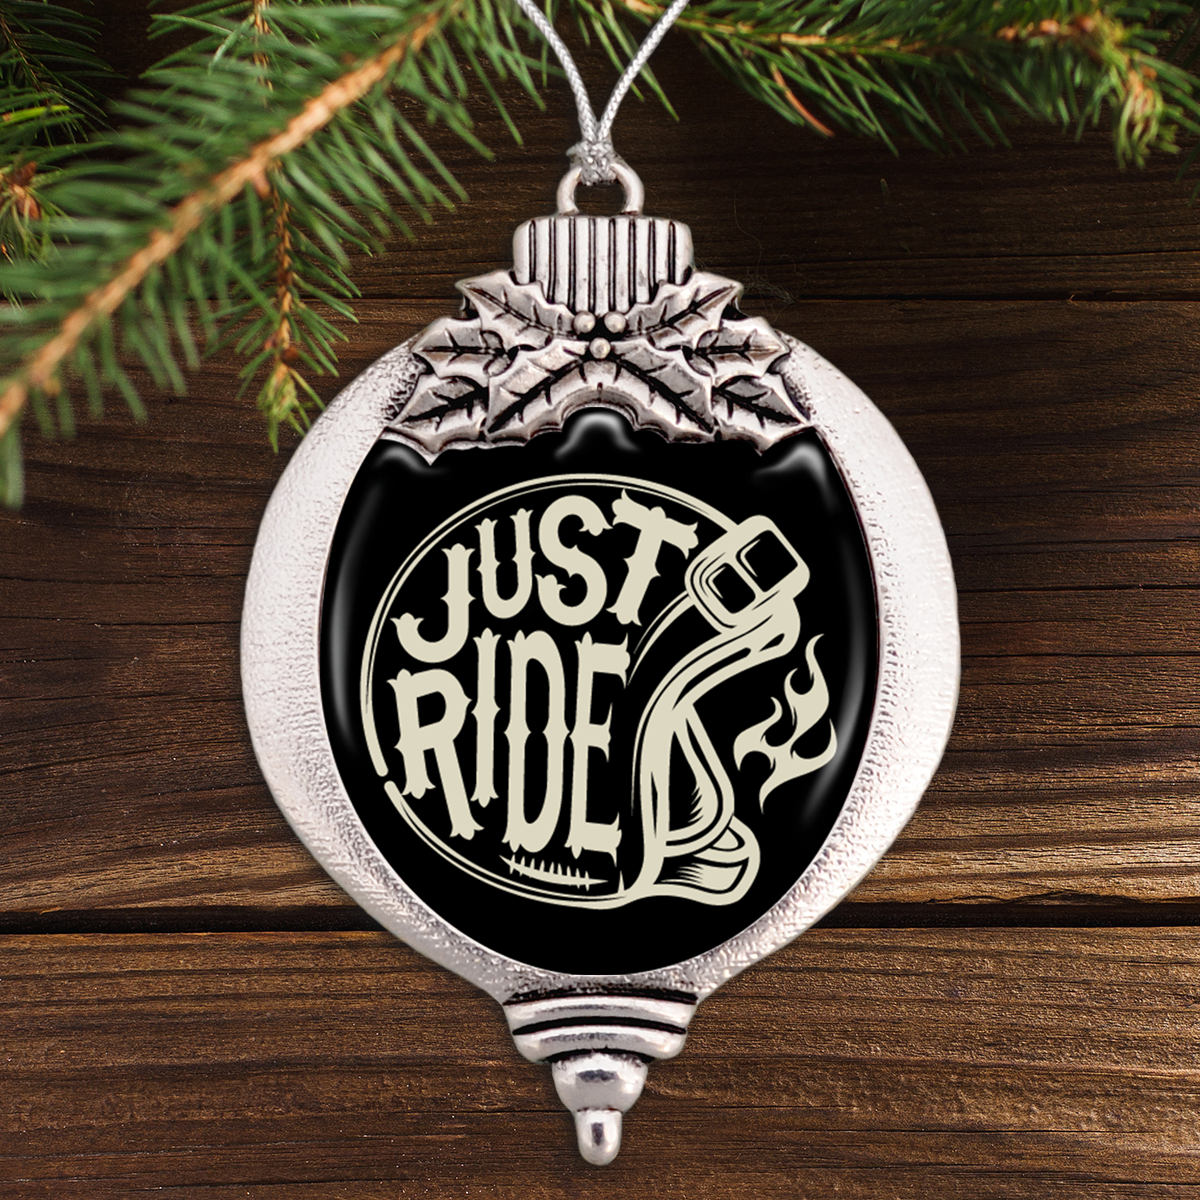 Just Ride Bulb Ornament